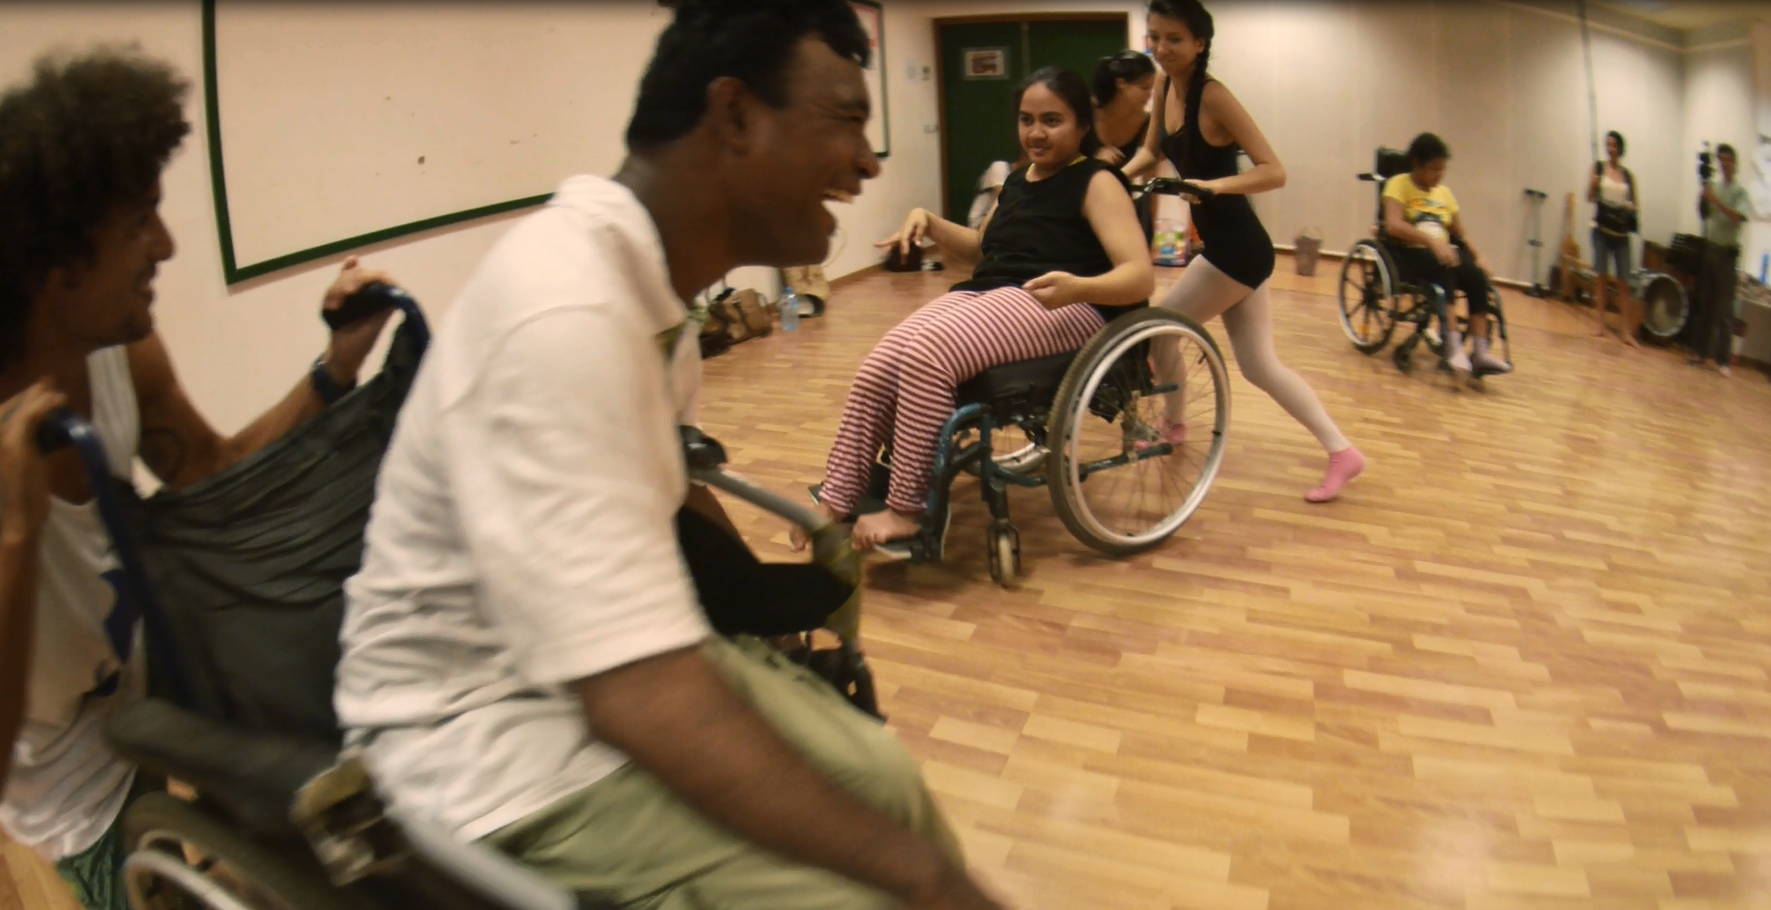 Danse en fauteuil roulant ou au sol, c'est tout en poésie qu'ils s'exprimeront avec leurs corps.